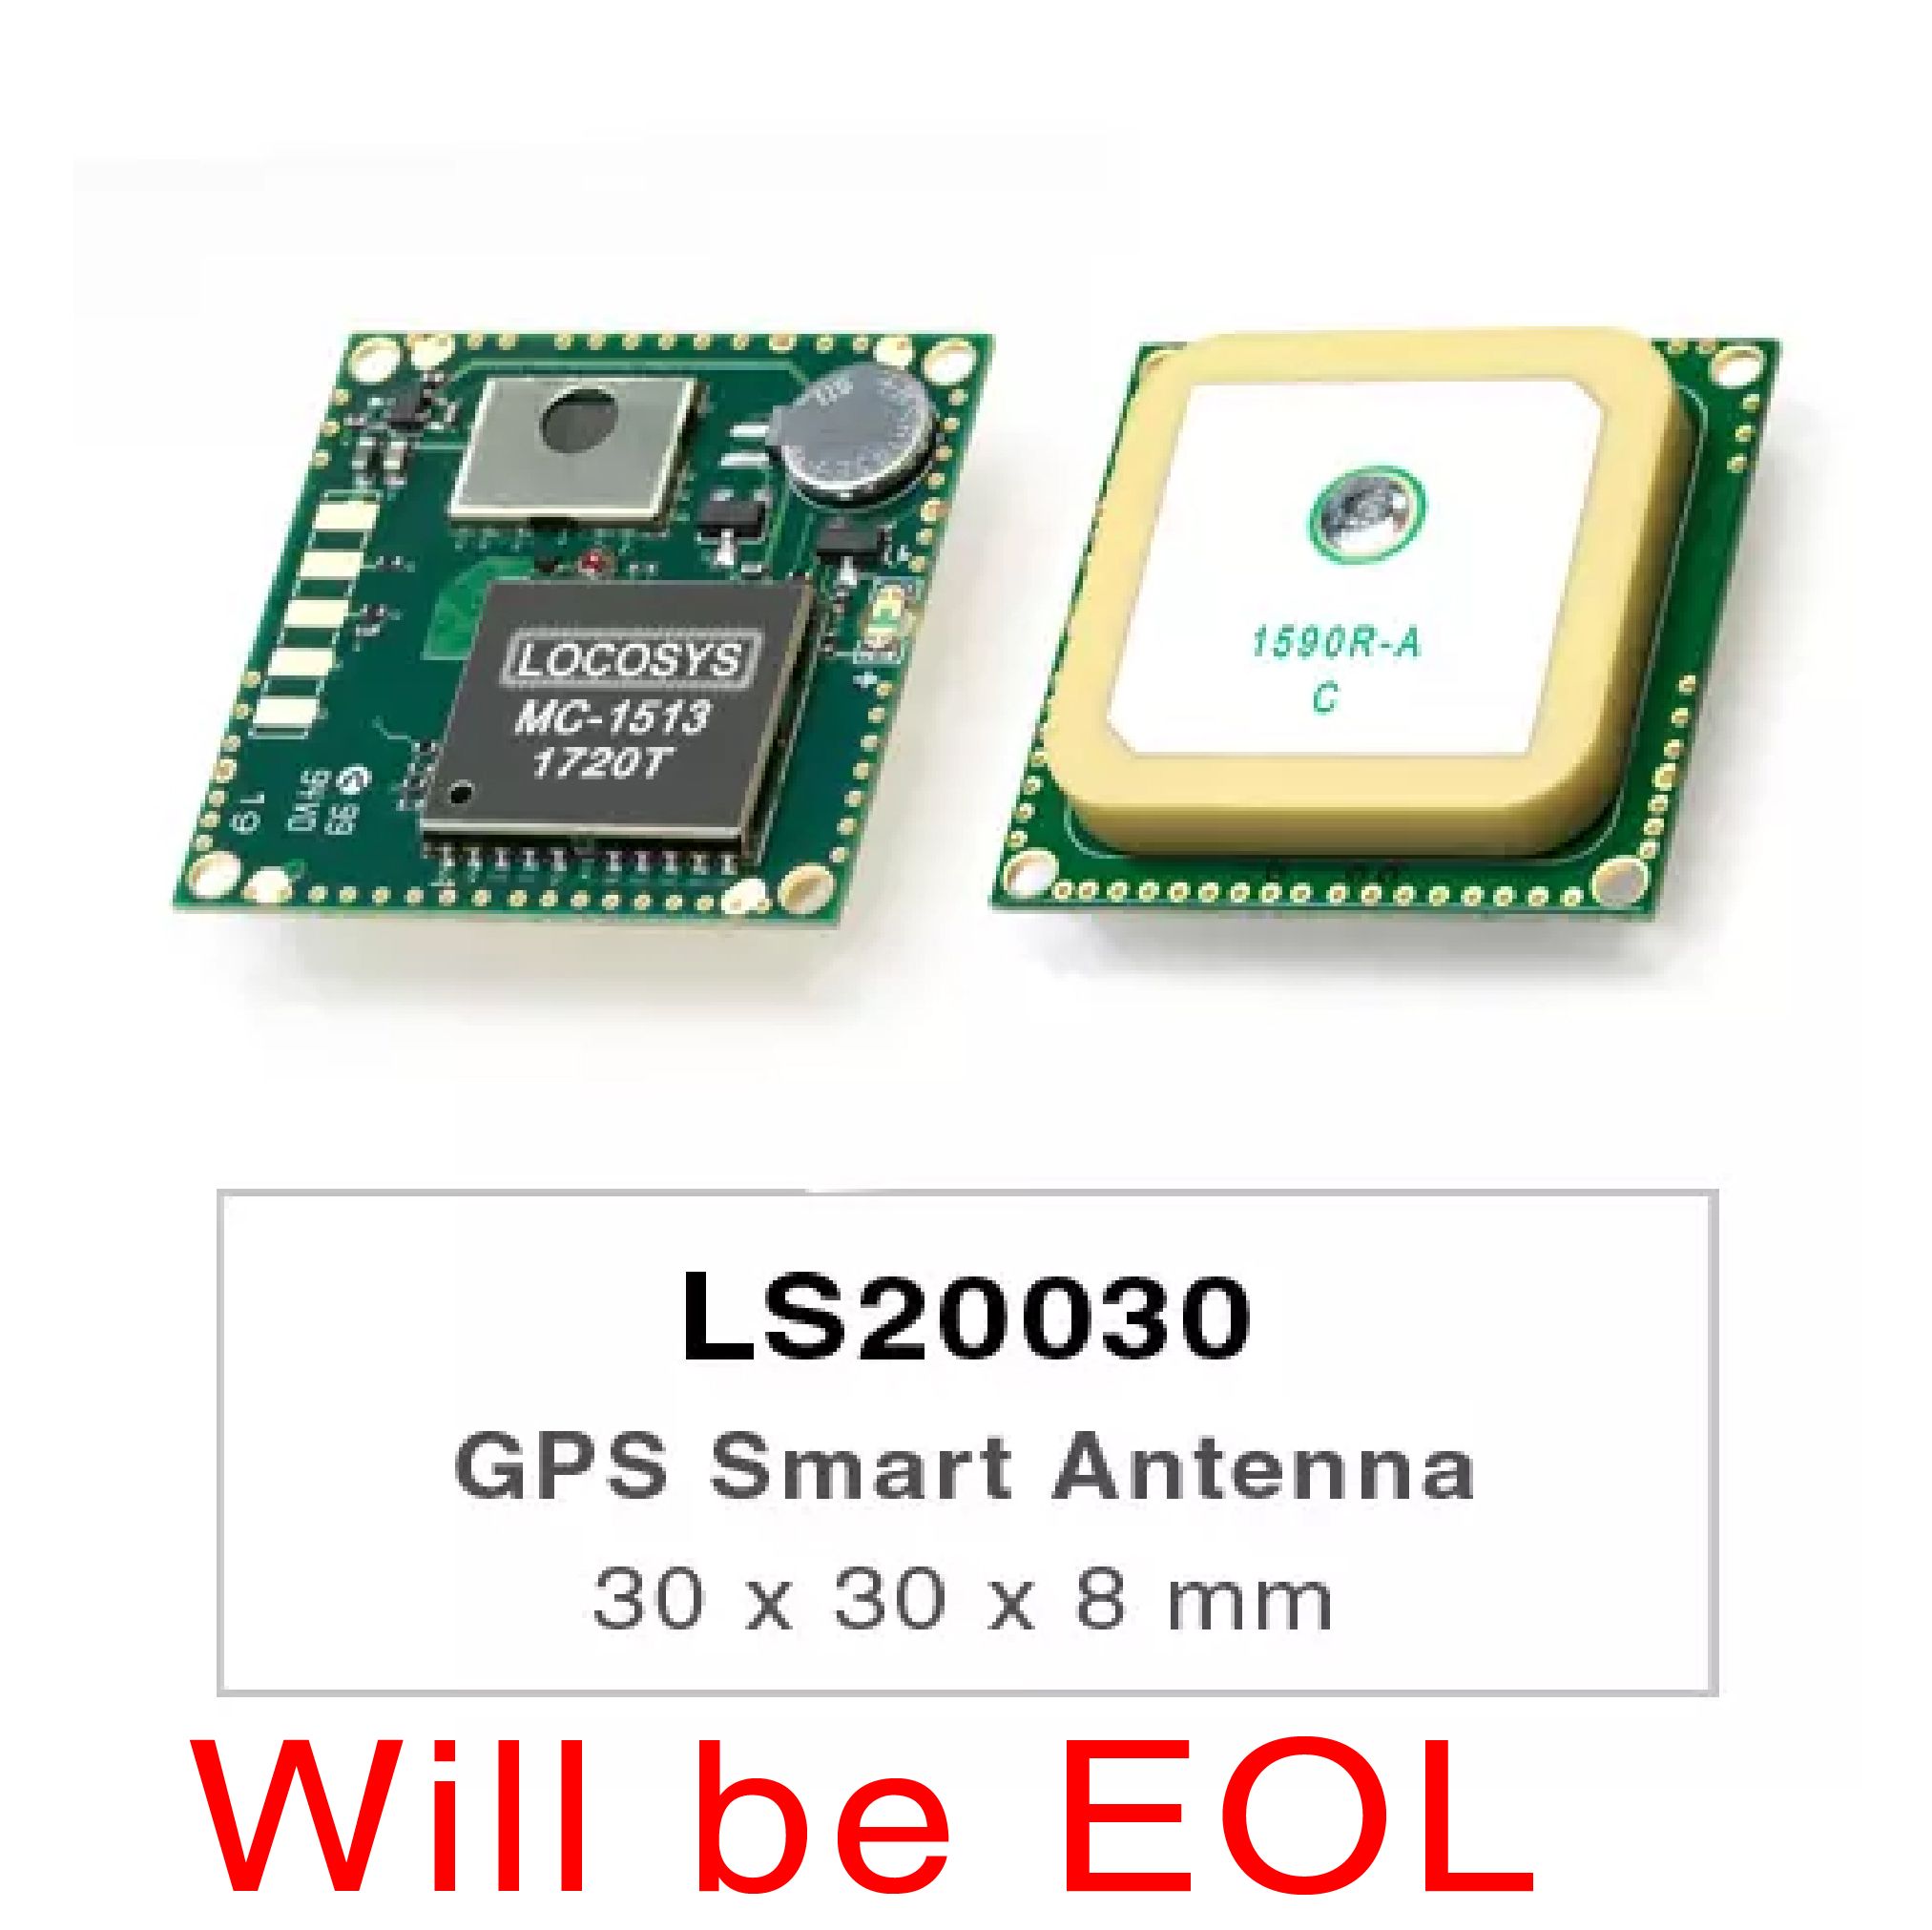 LS20030/31/32 シリーズ製品は、広範な OEM システム アプリケーション向けに設計された組み込みアンテナと GPS レシーバ回路を含む完全な GPS スマート アンテナ レシーバです。